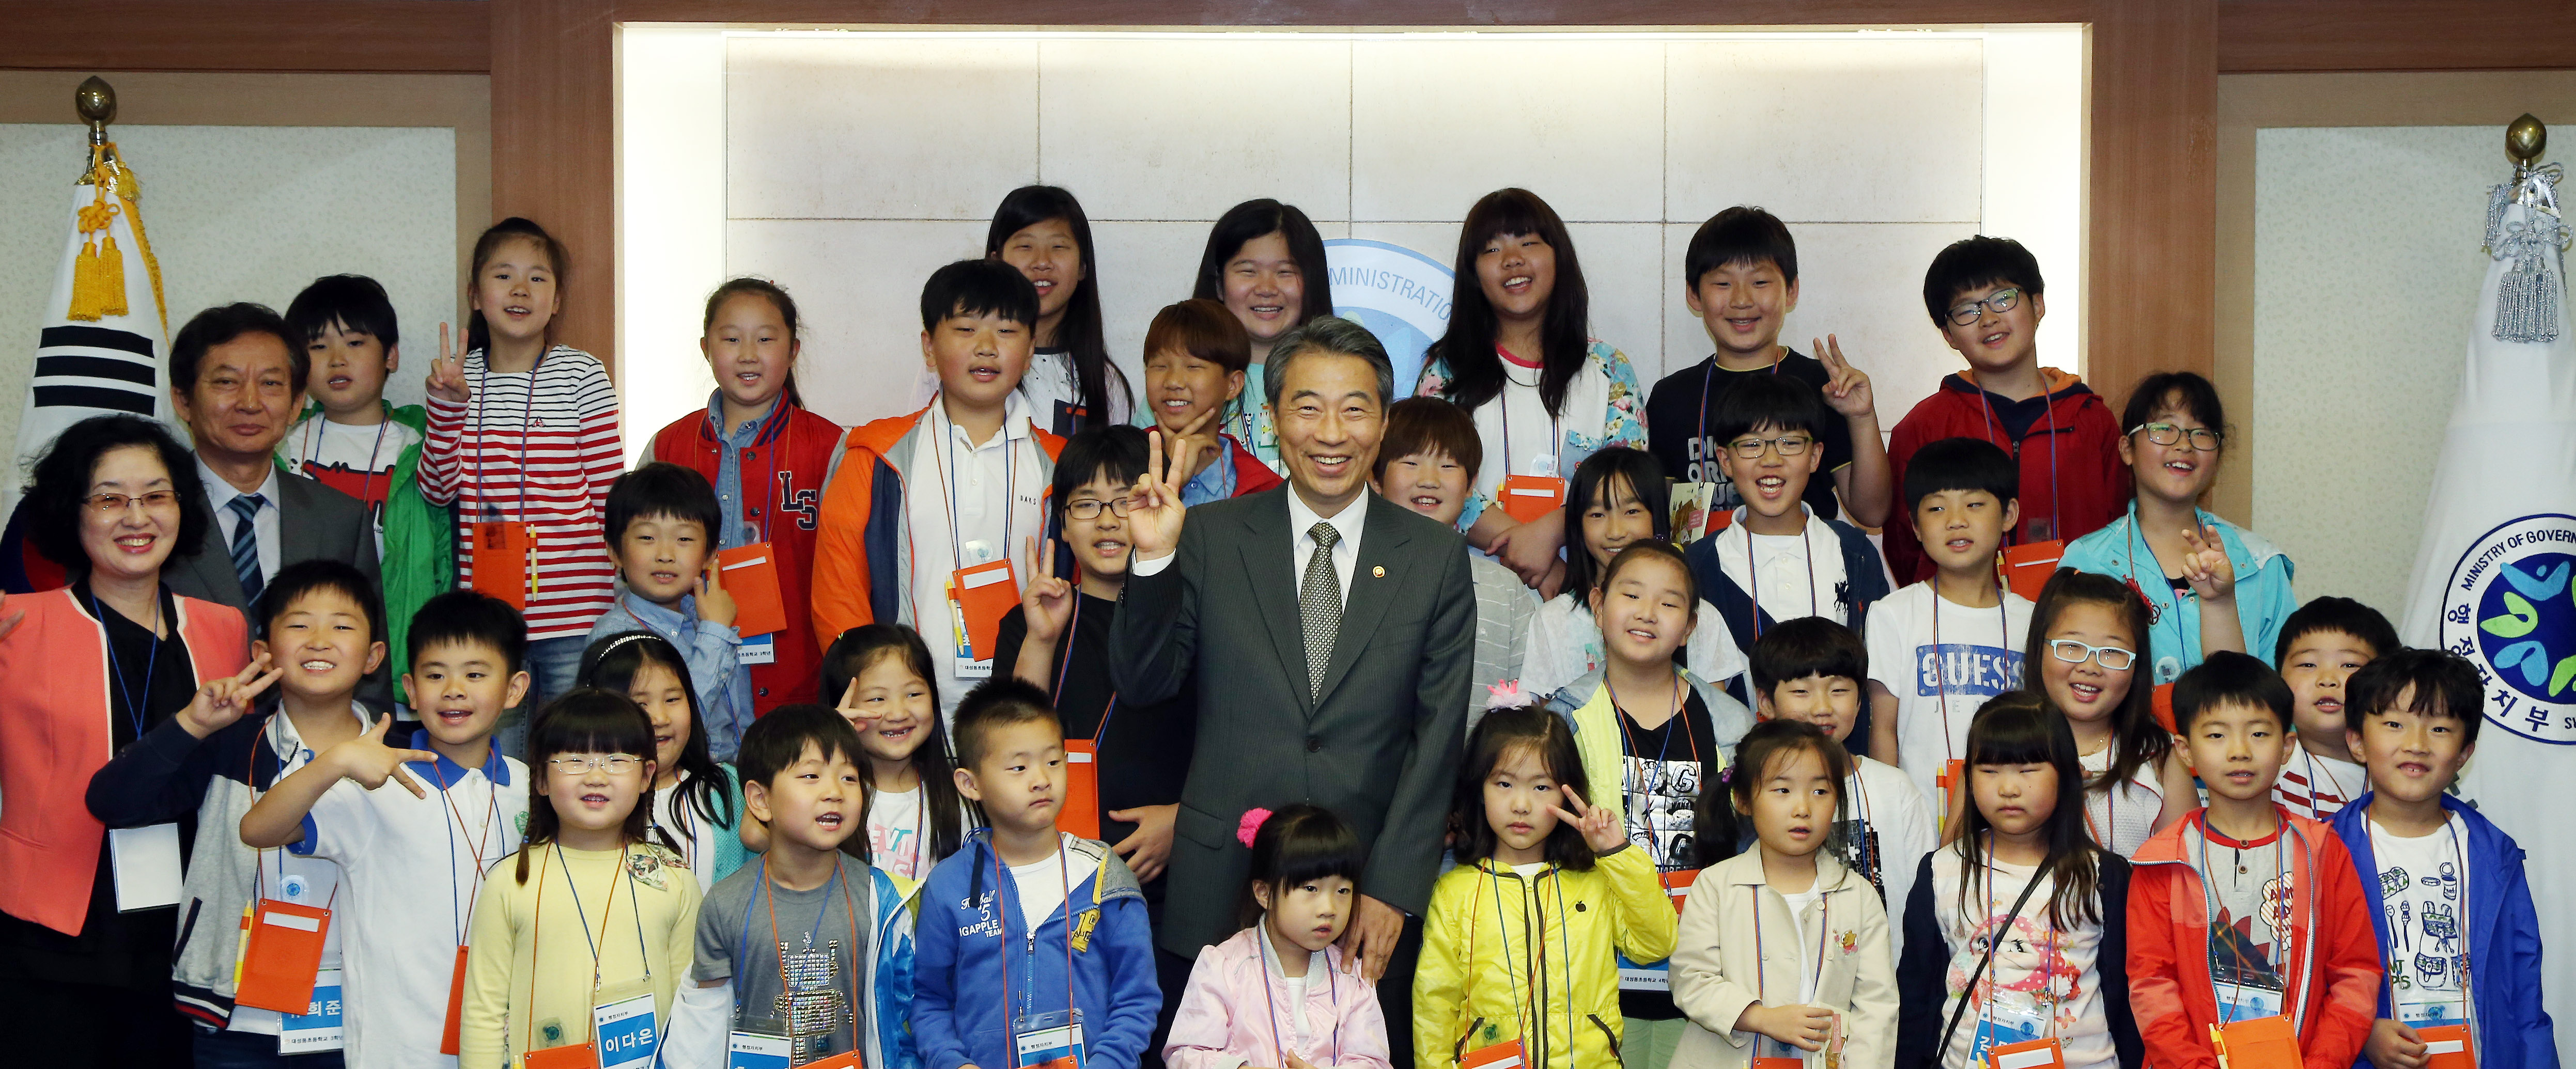 행정자치부, 비무장지대(DMZ) 대성동초등학교 어린이 초청 행사